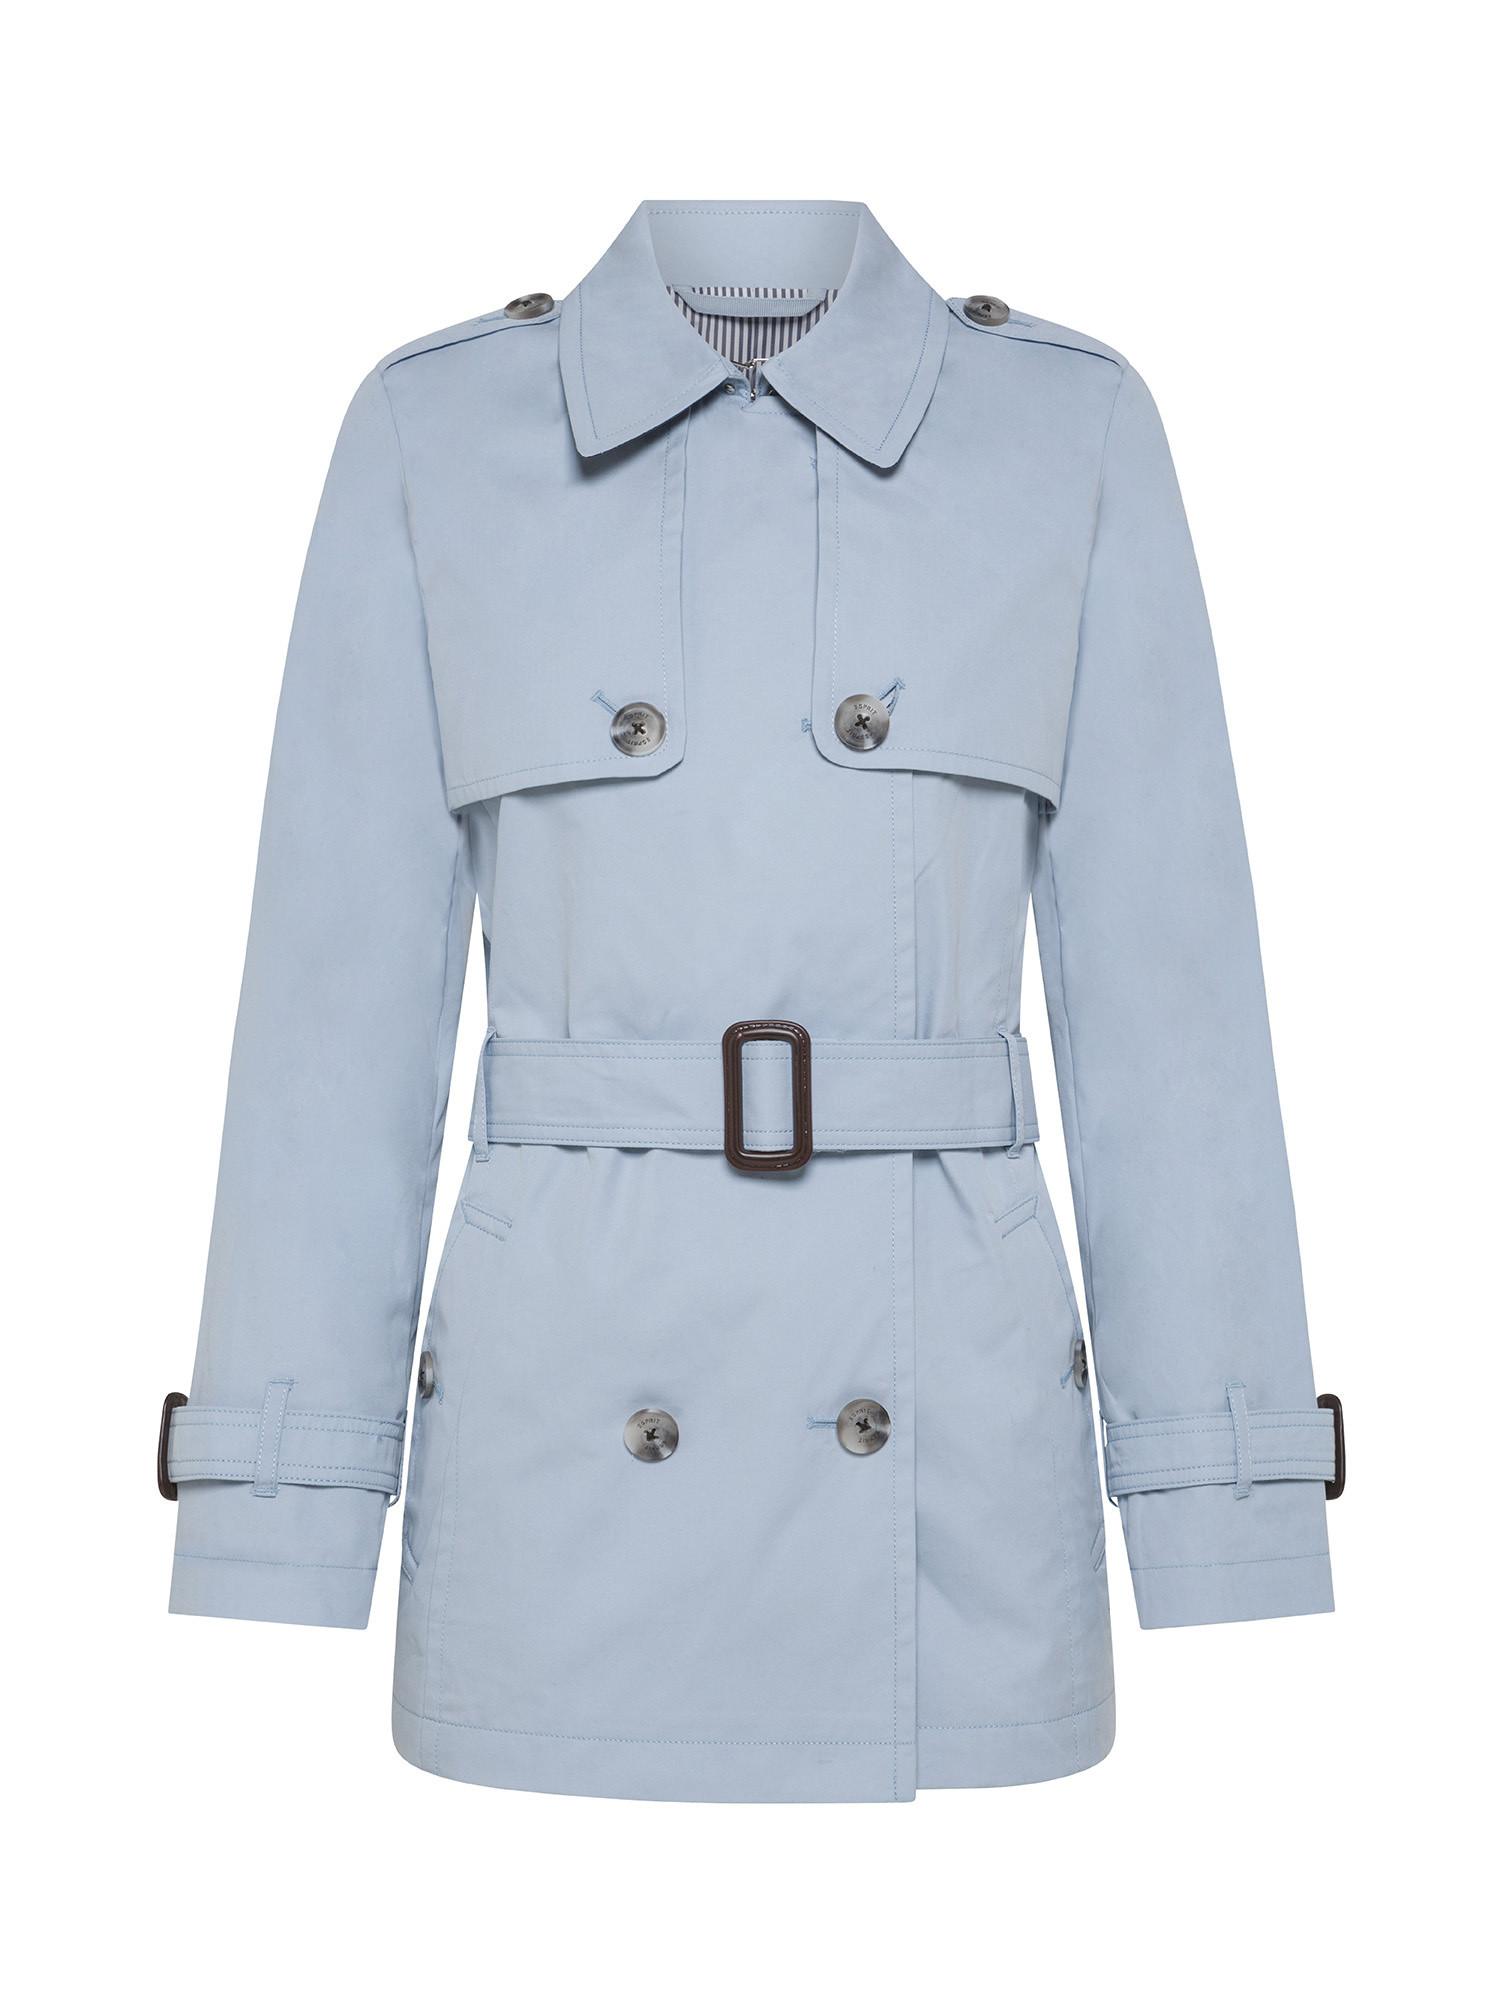 Esprit - Short trench coat with belt, Light Blue, large image number 0